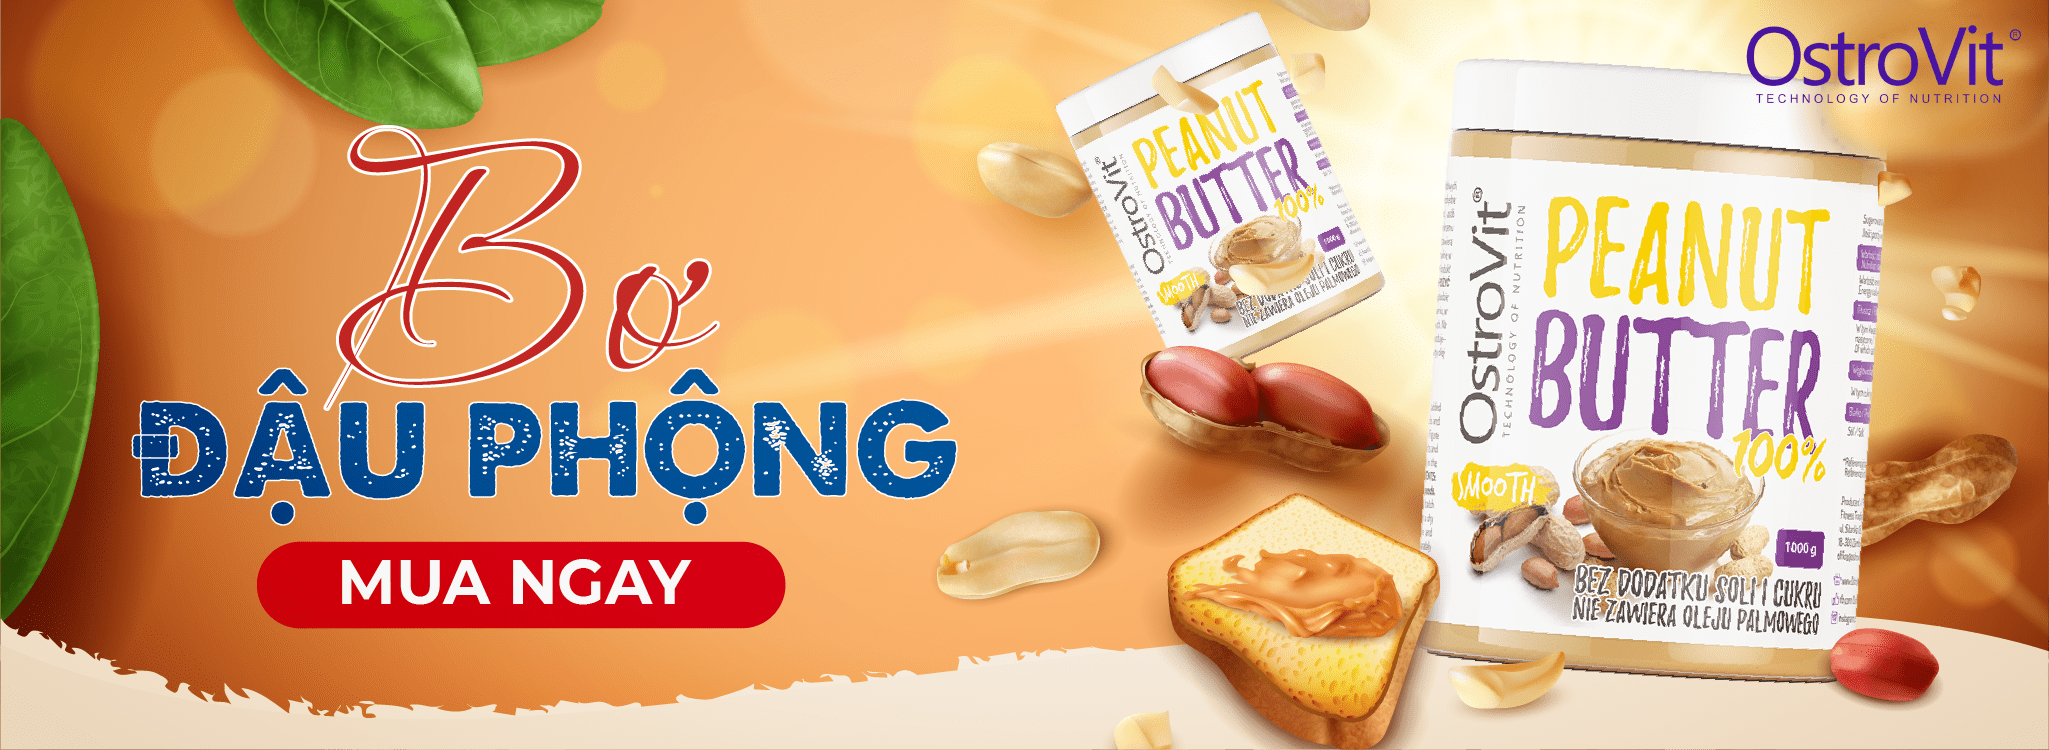 Bơ đậu phộng Ostrovit 100% Peanut Butter cung cấp thành phần nguyên chất, giàu dinh dưỡng, sản phẩm nhập khẩu chính hãng, giá rẻ tốt nhất Hà Nội TpHCM